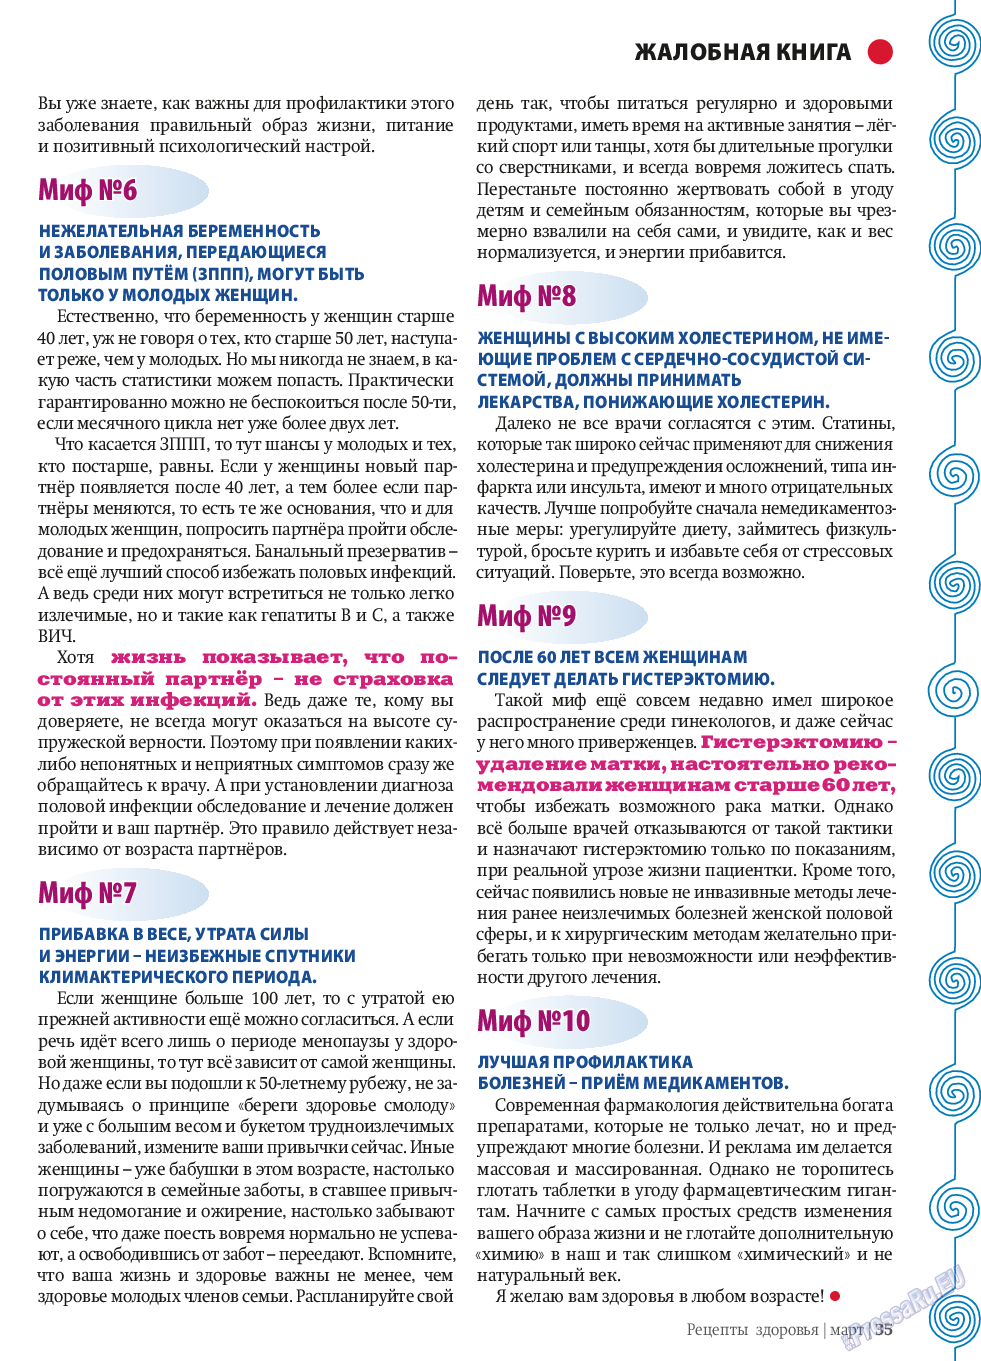 Рецепты здоровья (журнал). 2014 год, номер 58, стр. 35